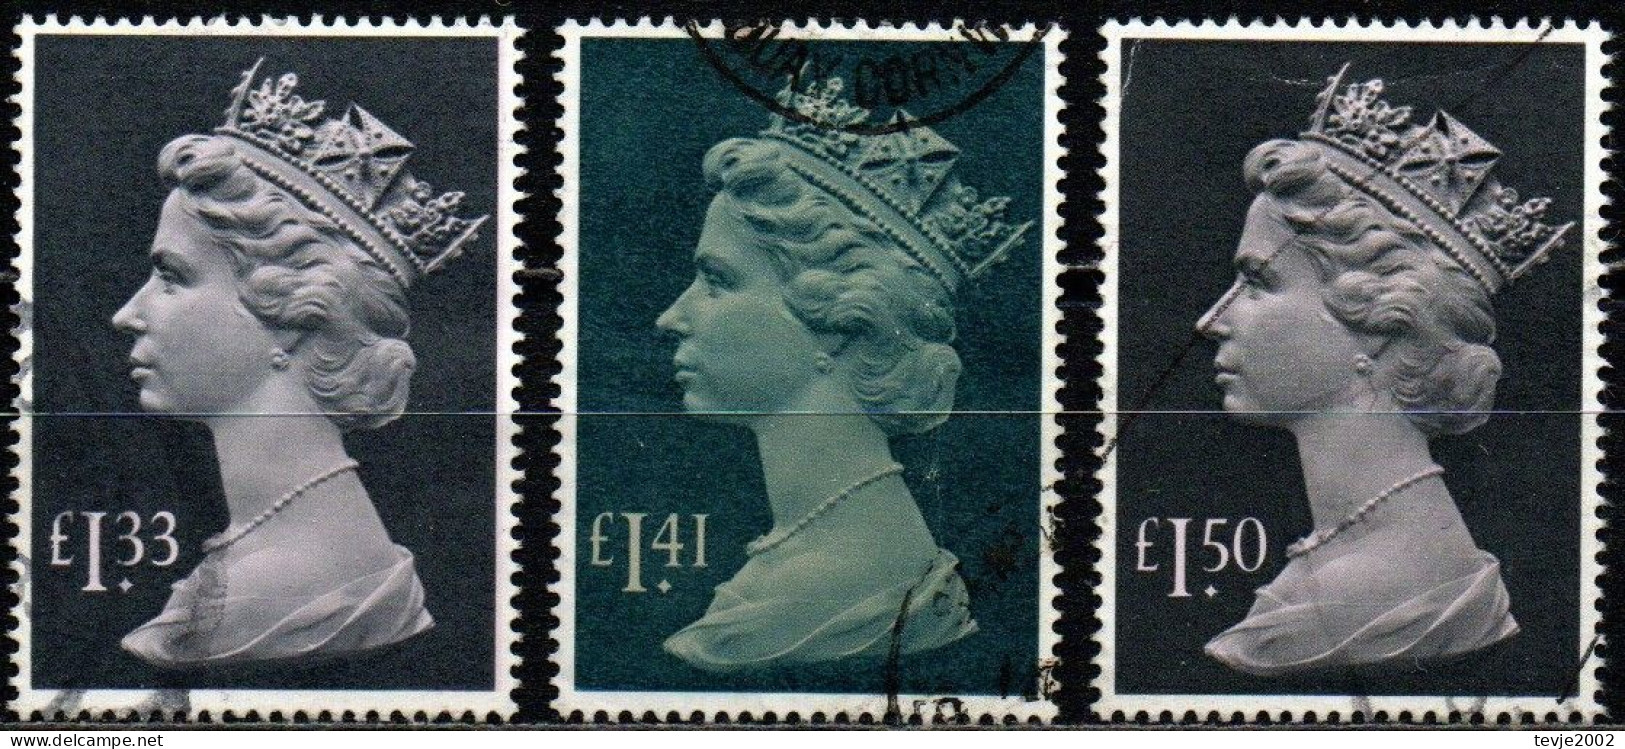 Großbritannien 1984 - 1986 - Mi.Nr. 1007 1043 1084 - Gestempelt Used - Machin - Machins